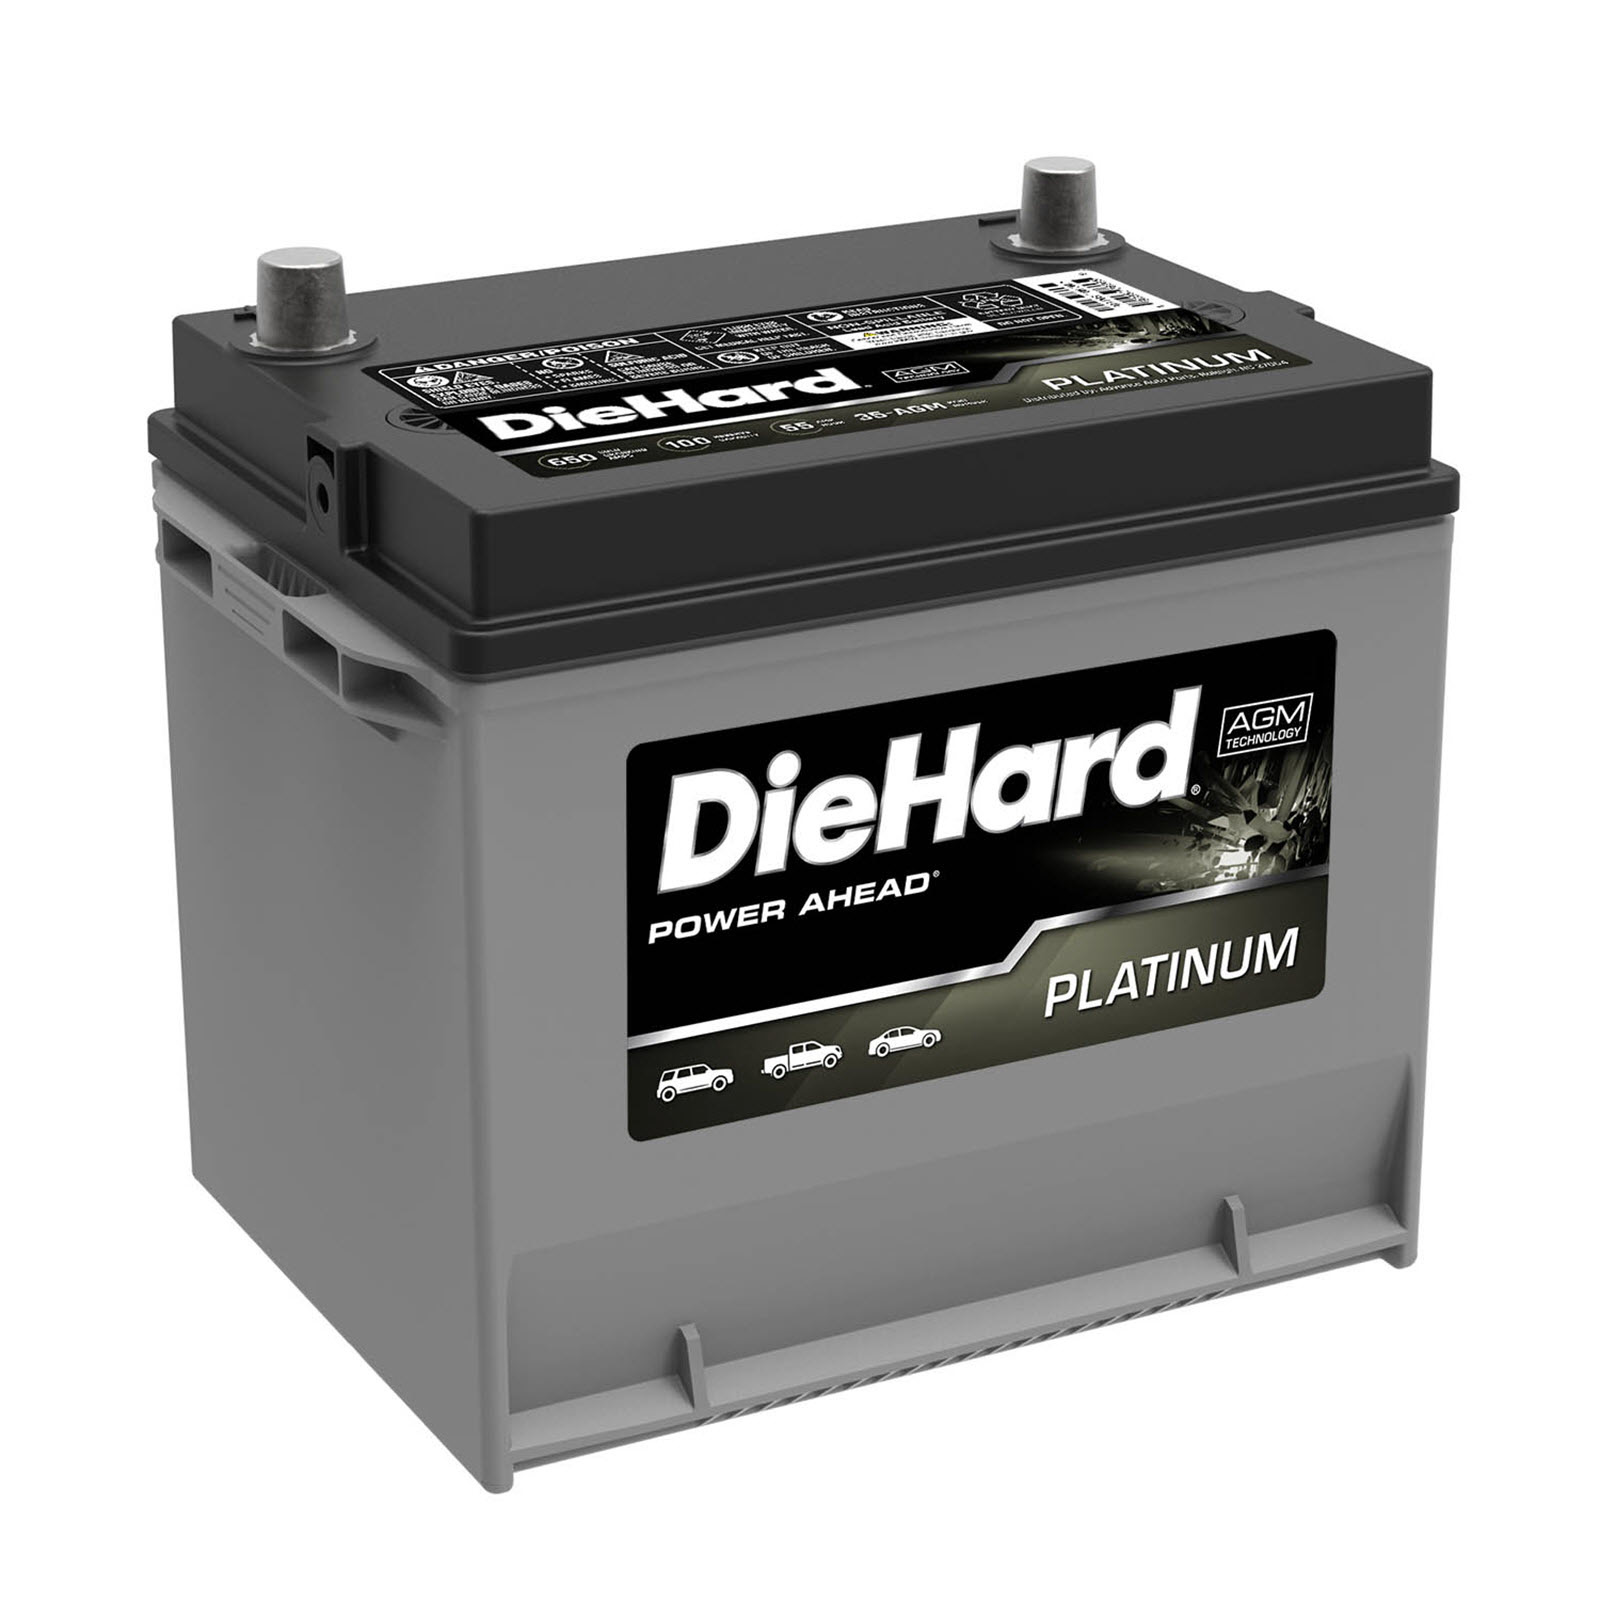 Diehard Battery Rebate